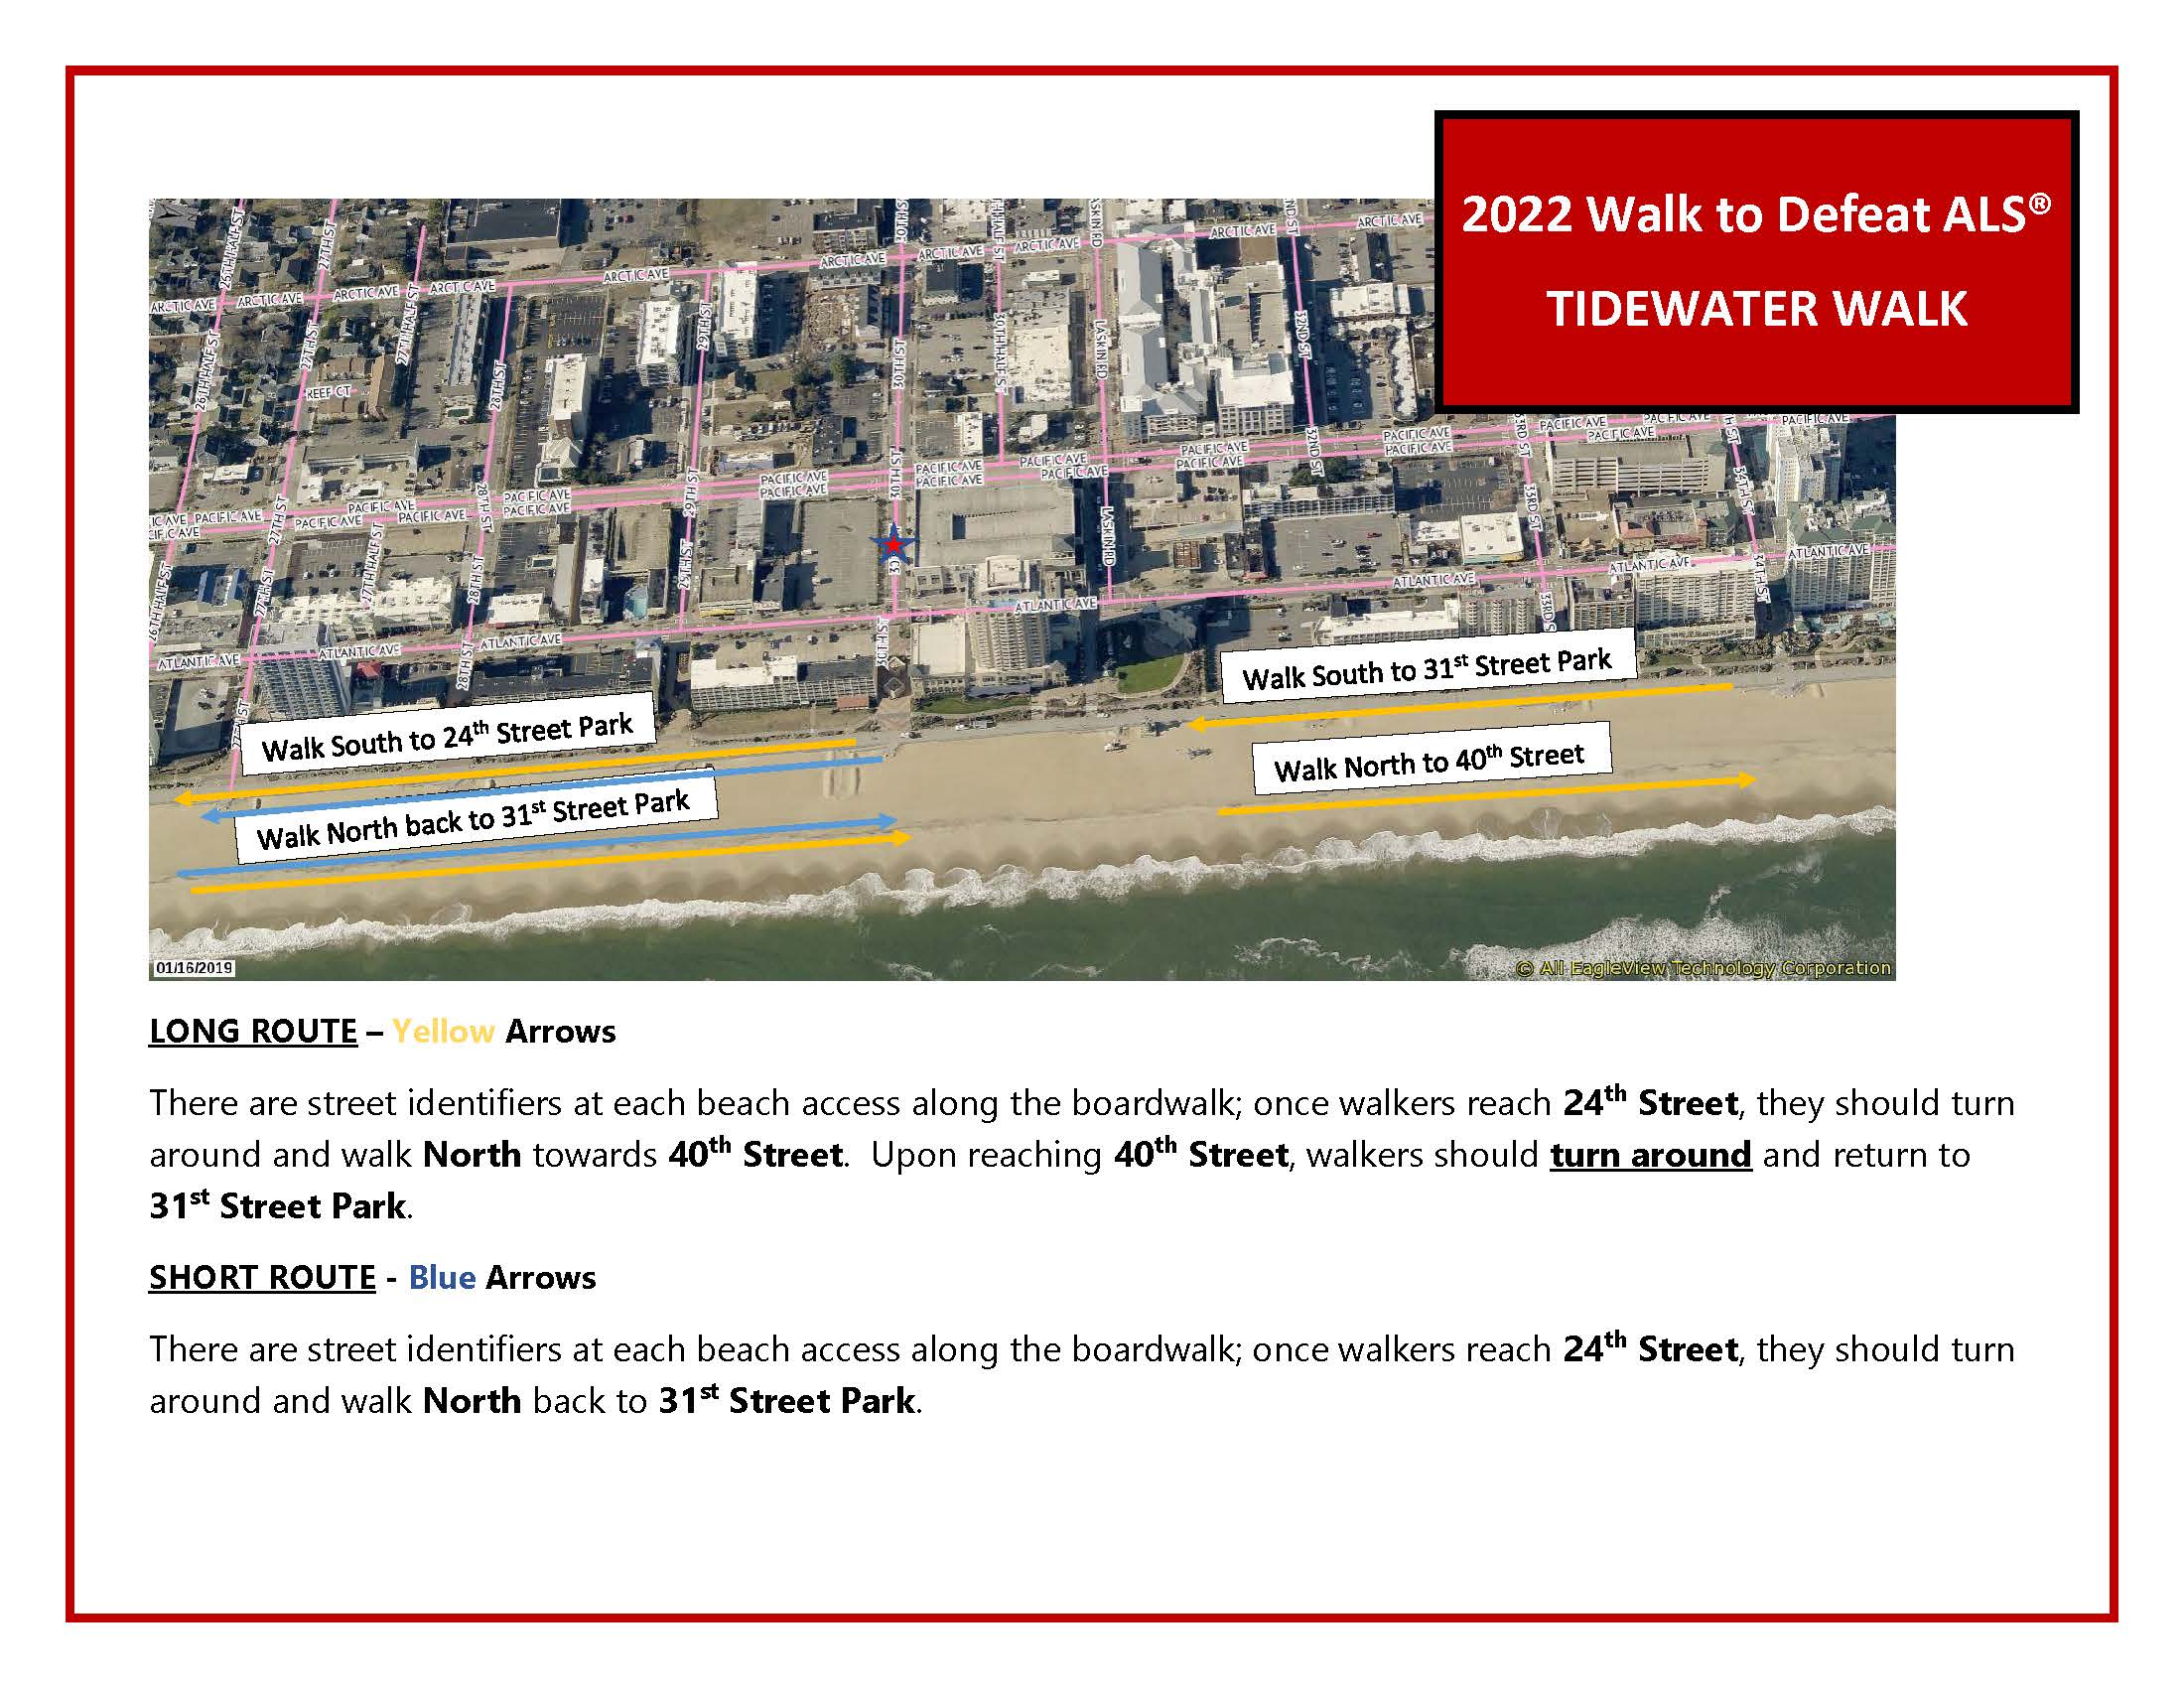 2022 Tidewater Walk